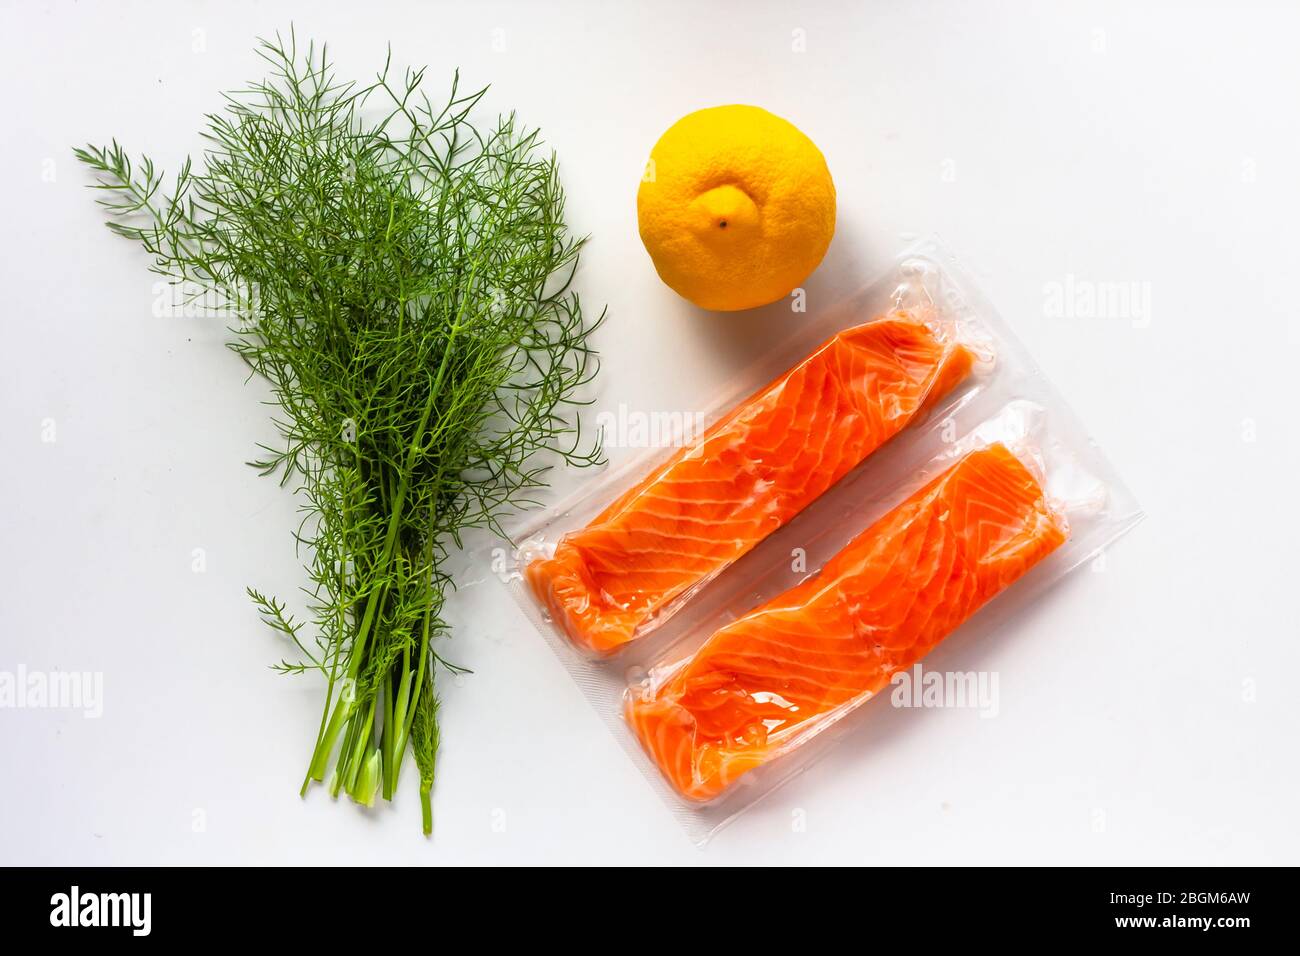 Filetti di pesce rosso o salmone in confezione sottovuoto su fondo bianco. Ingredienti per la cottura di pesce fresco, limone e aneto. Omega-3 Foto Stock